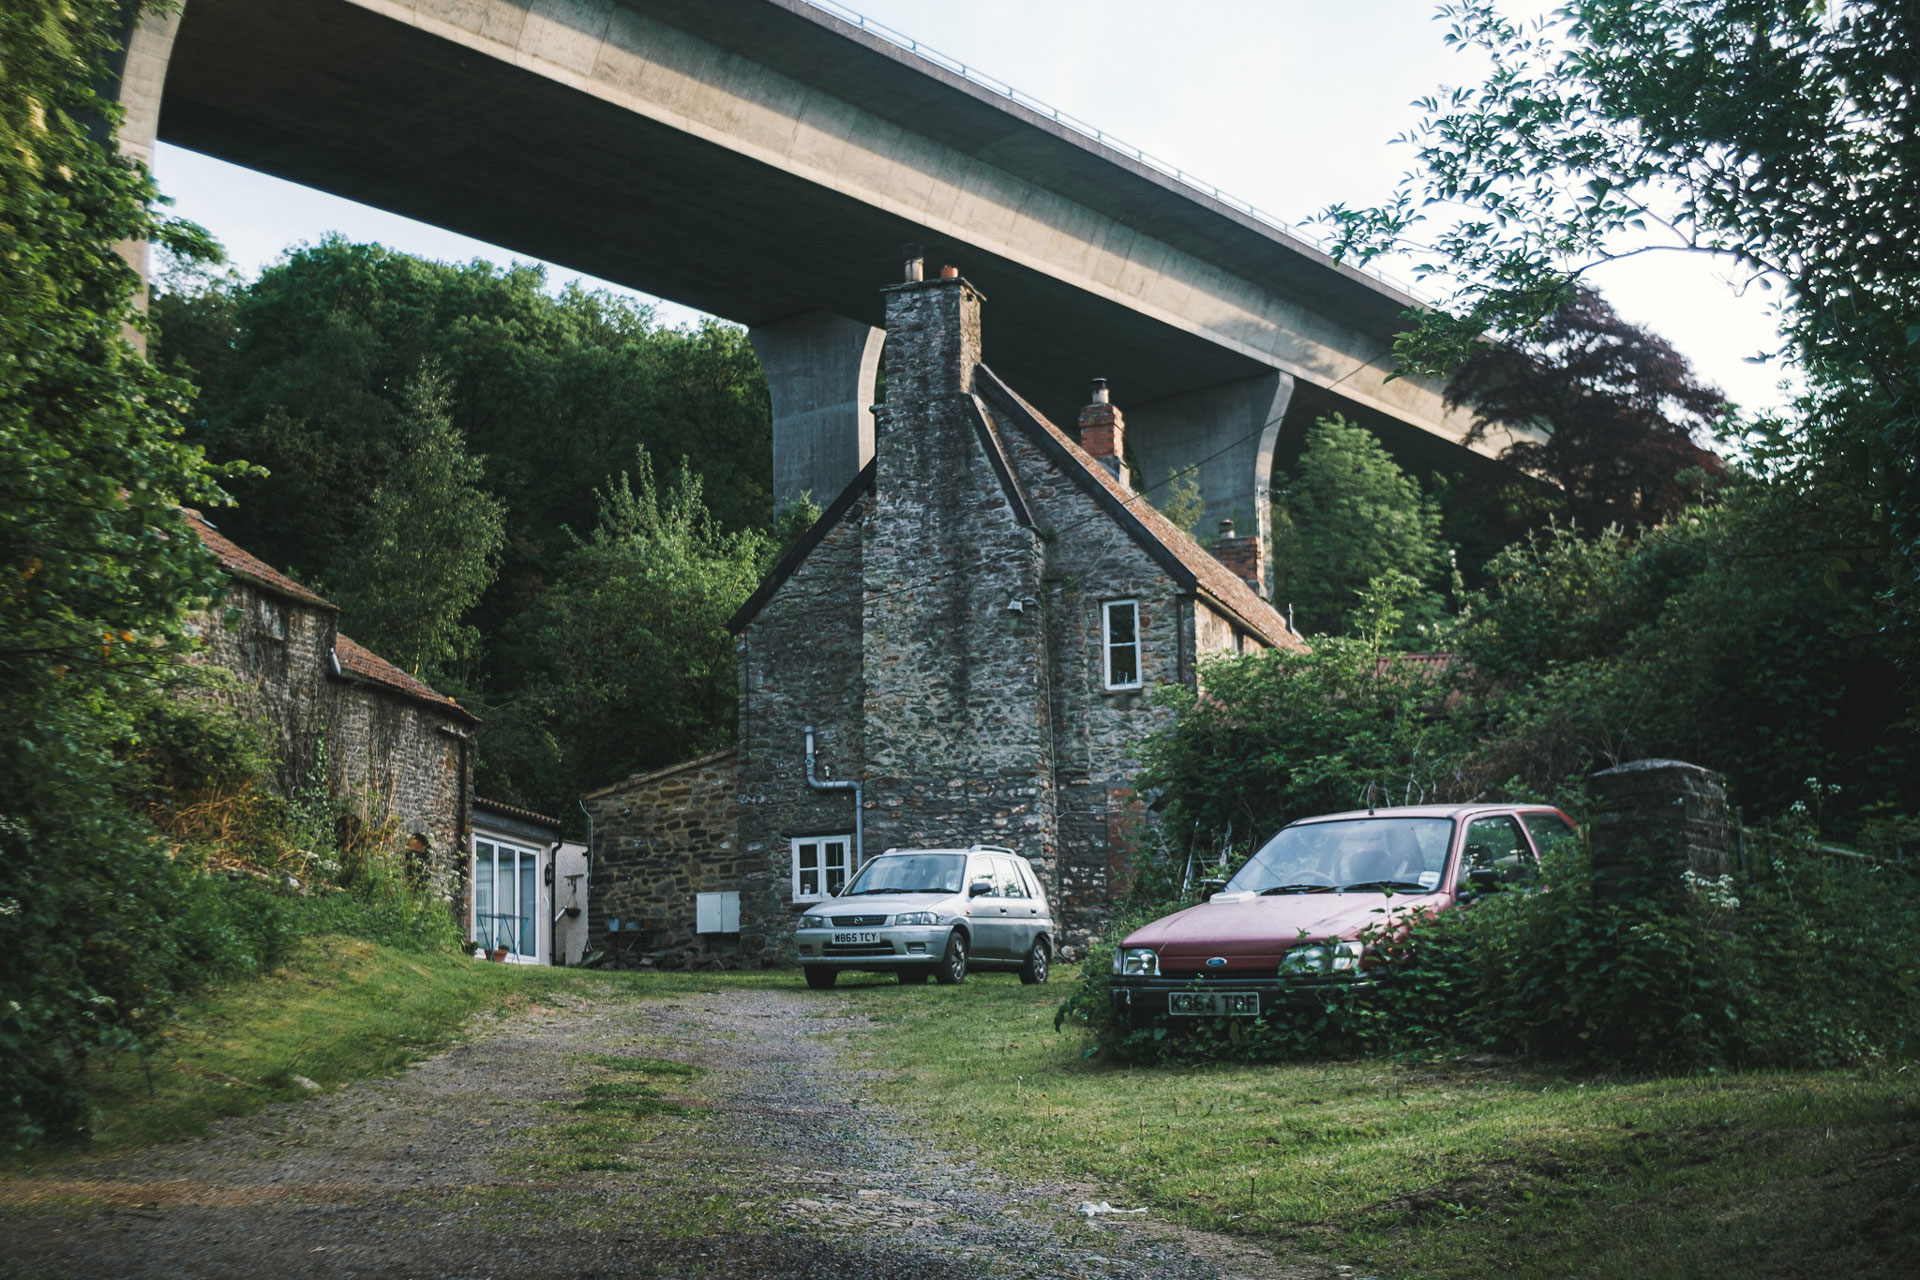 Along The Way Photographic Documentary Abandoned vehicle Nortons Wood Lane